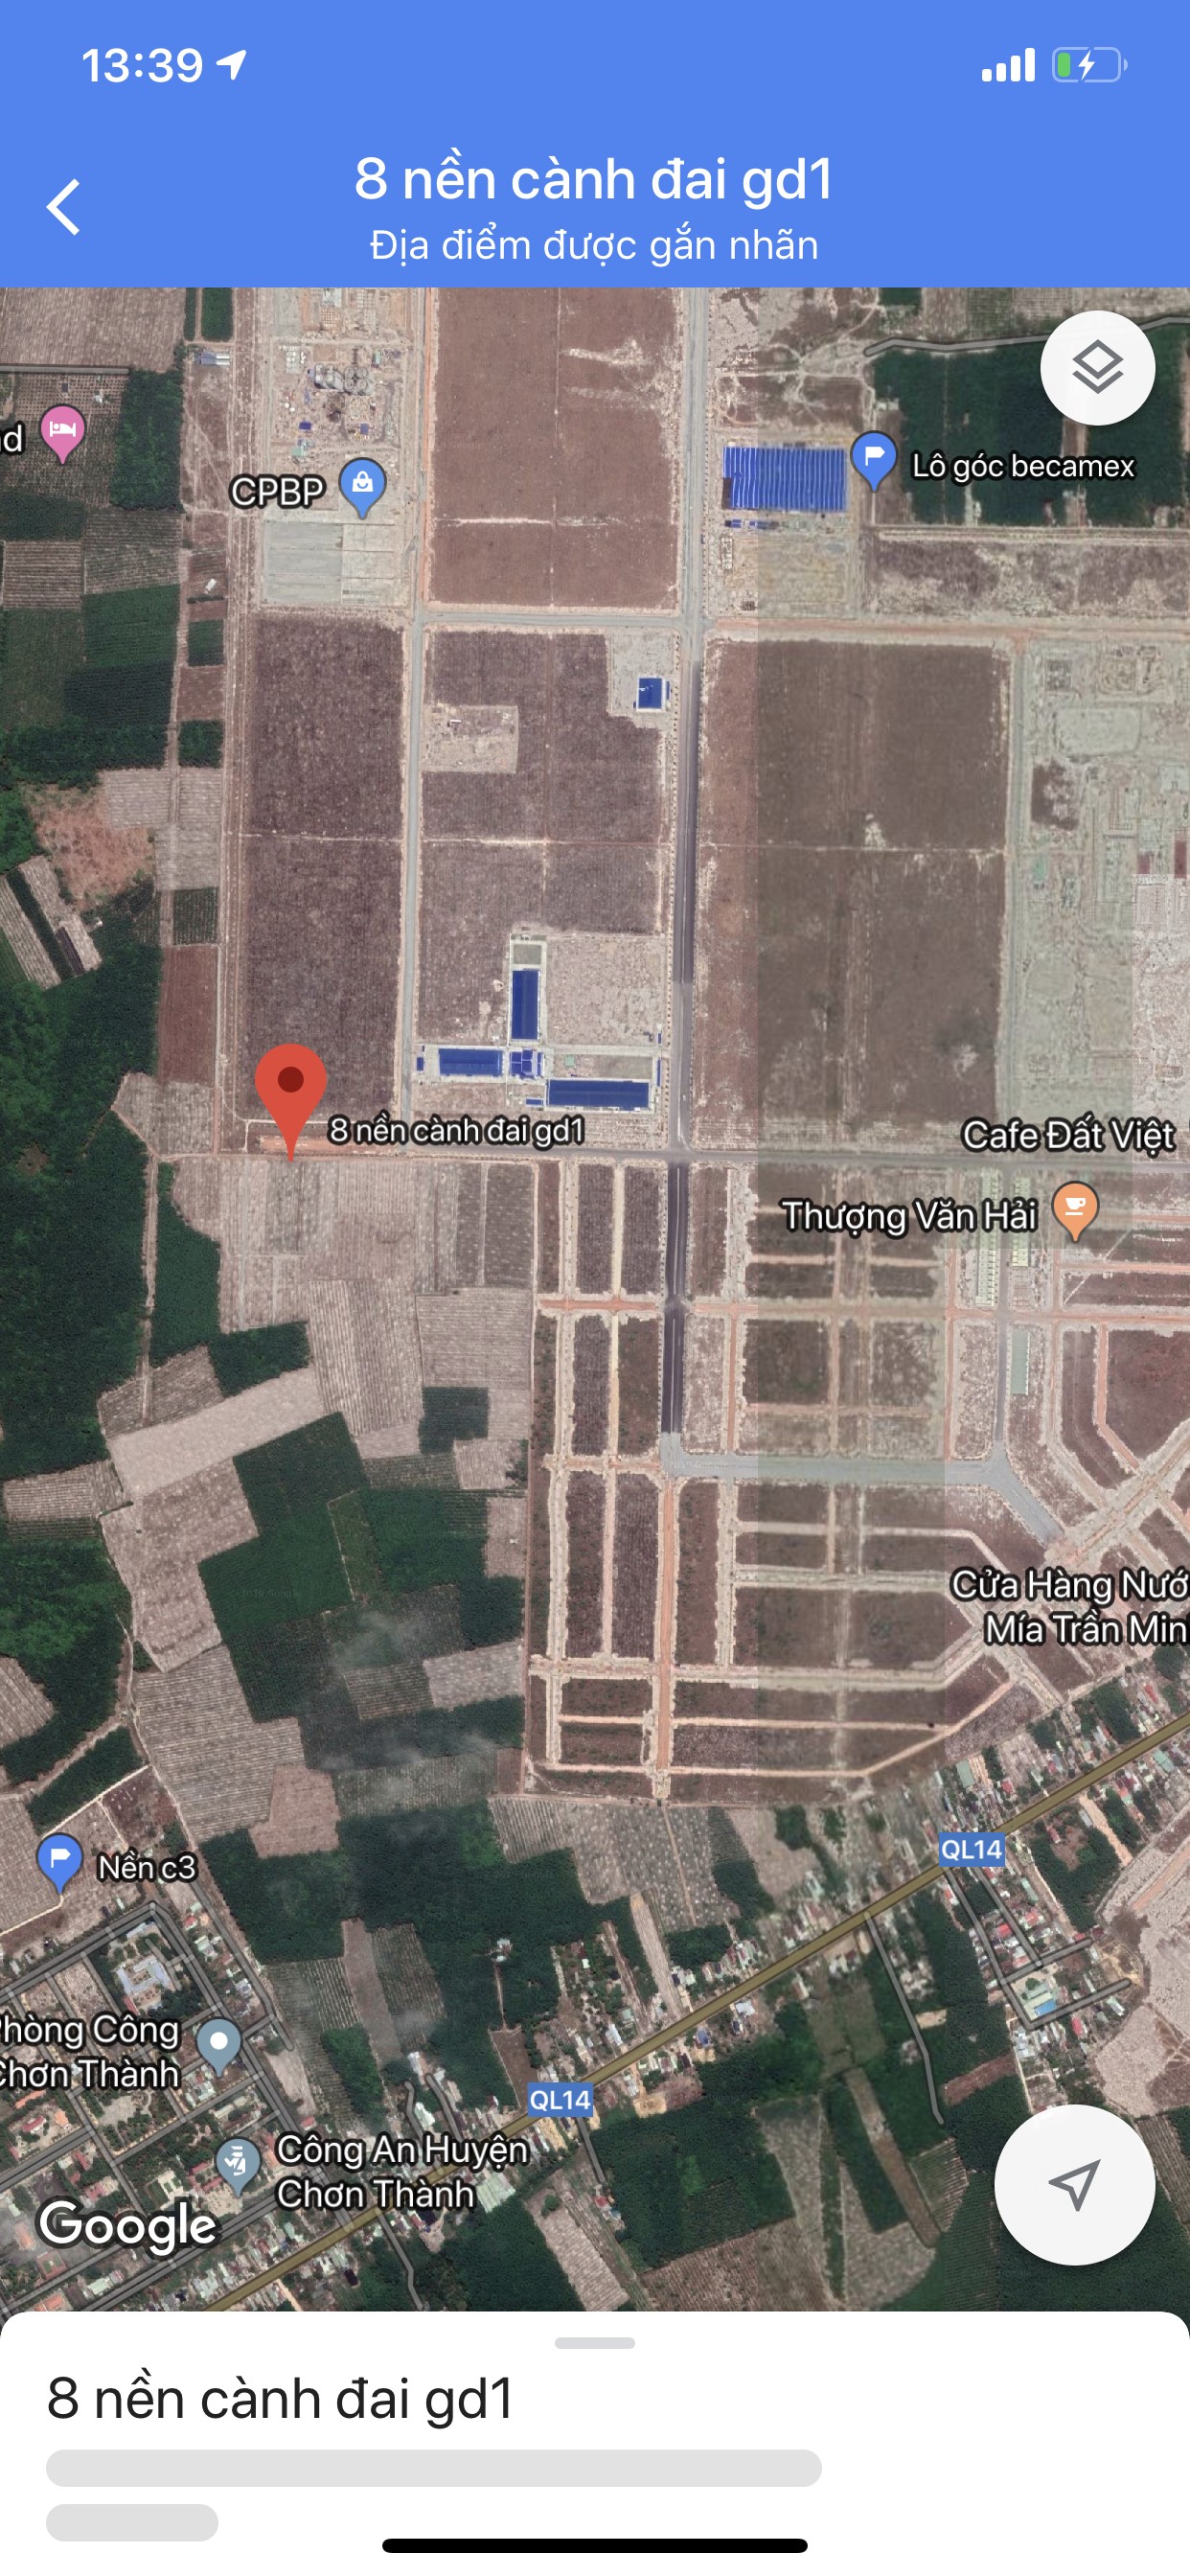 Cần bán lô đất đói diện KCN Becamex Bình Phước, sổ hồng sẵn, giá rẻ.